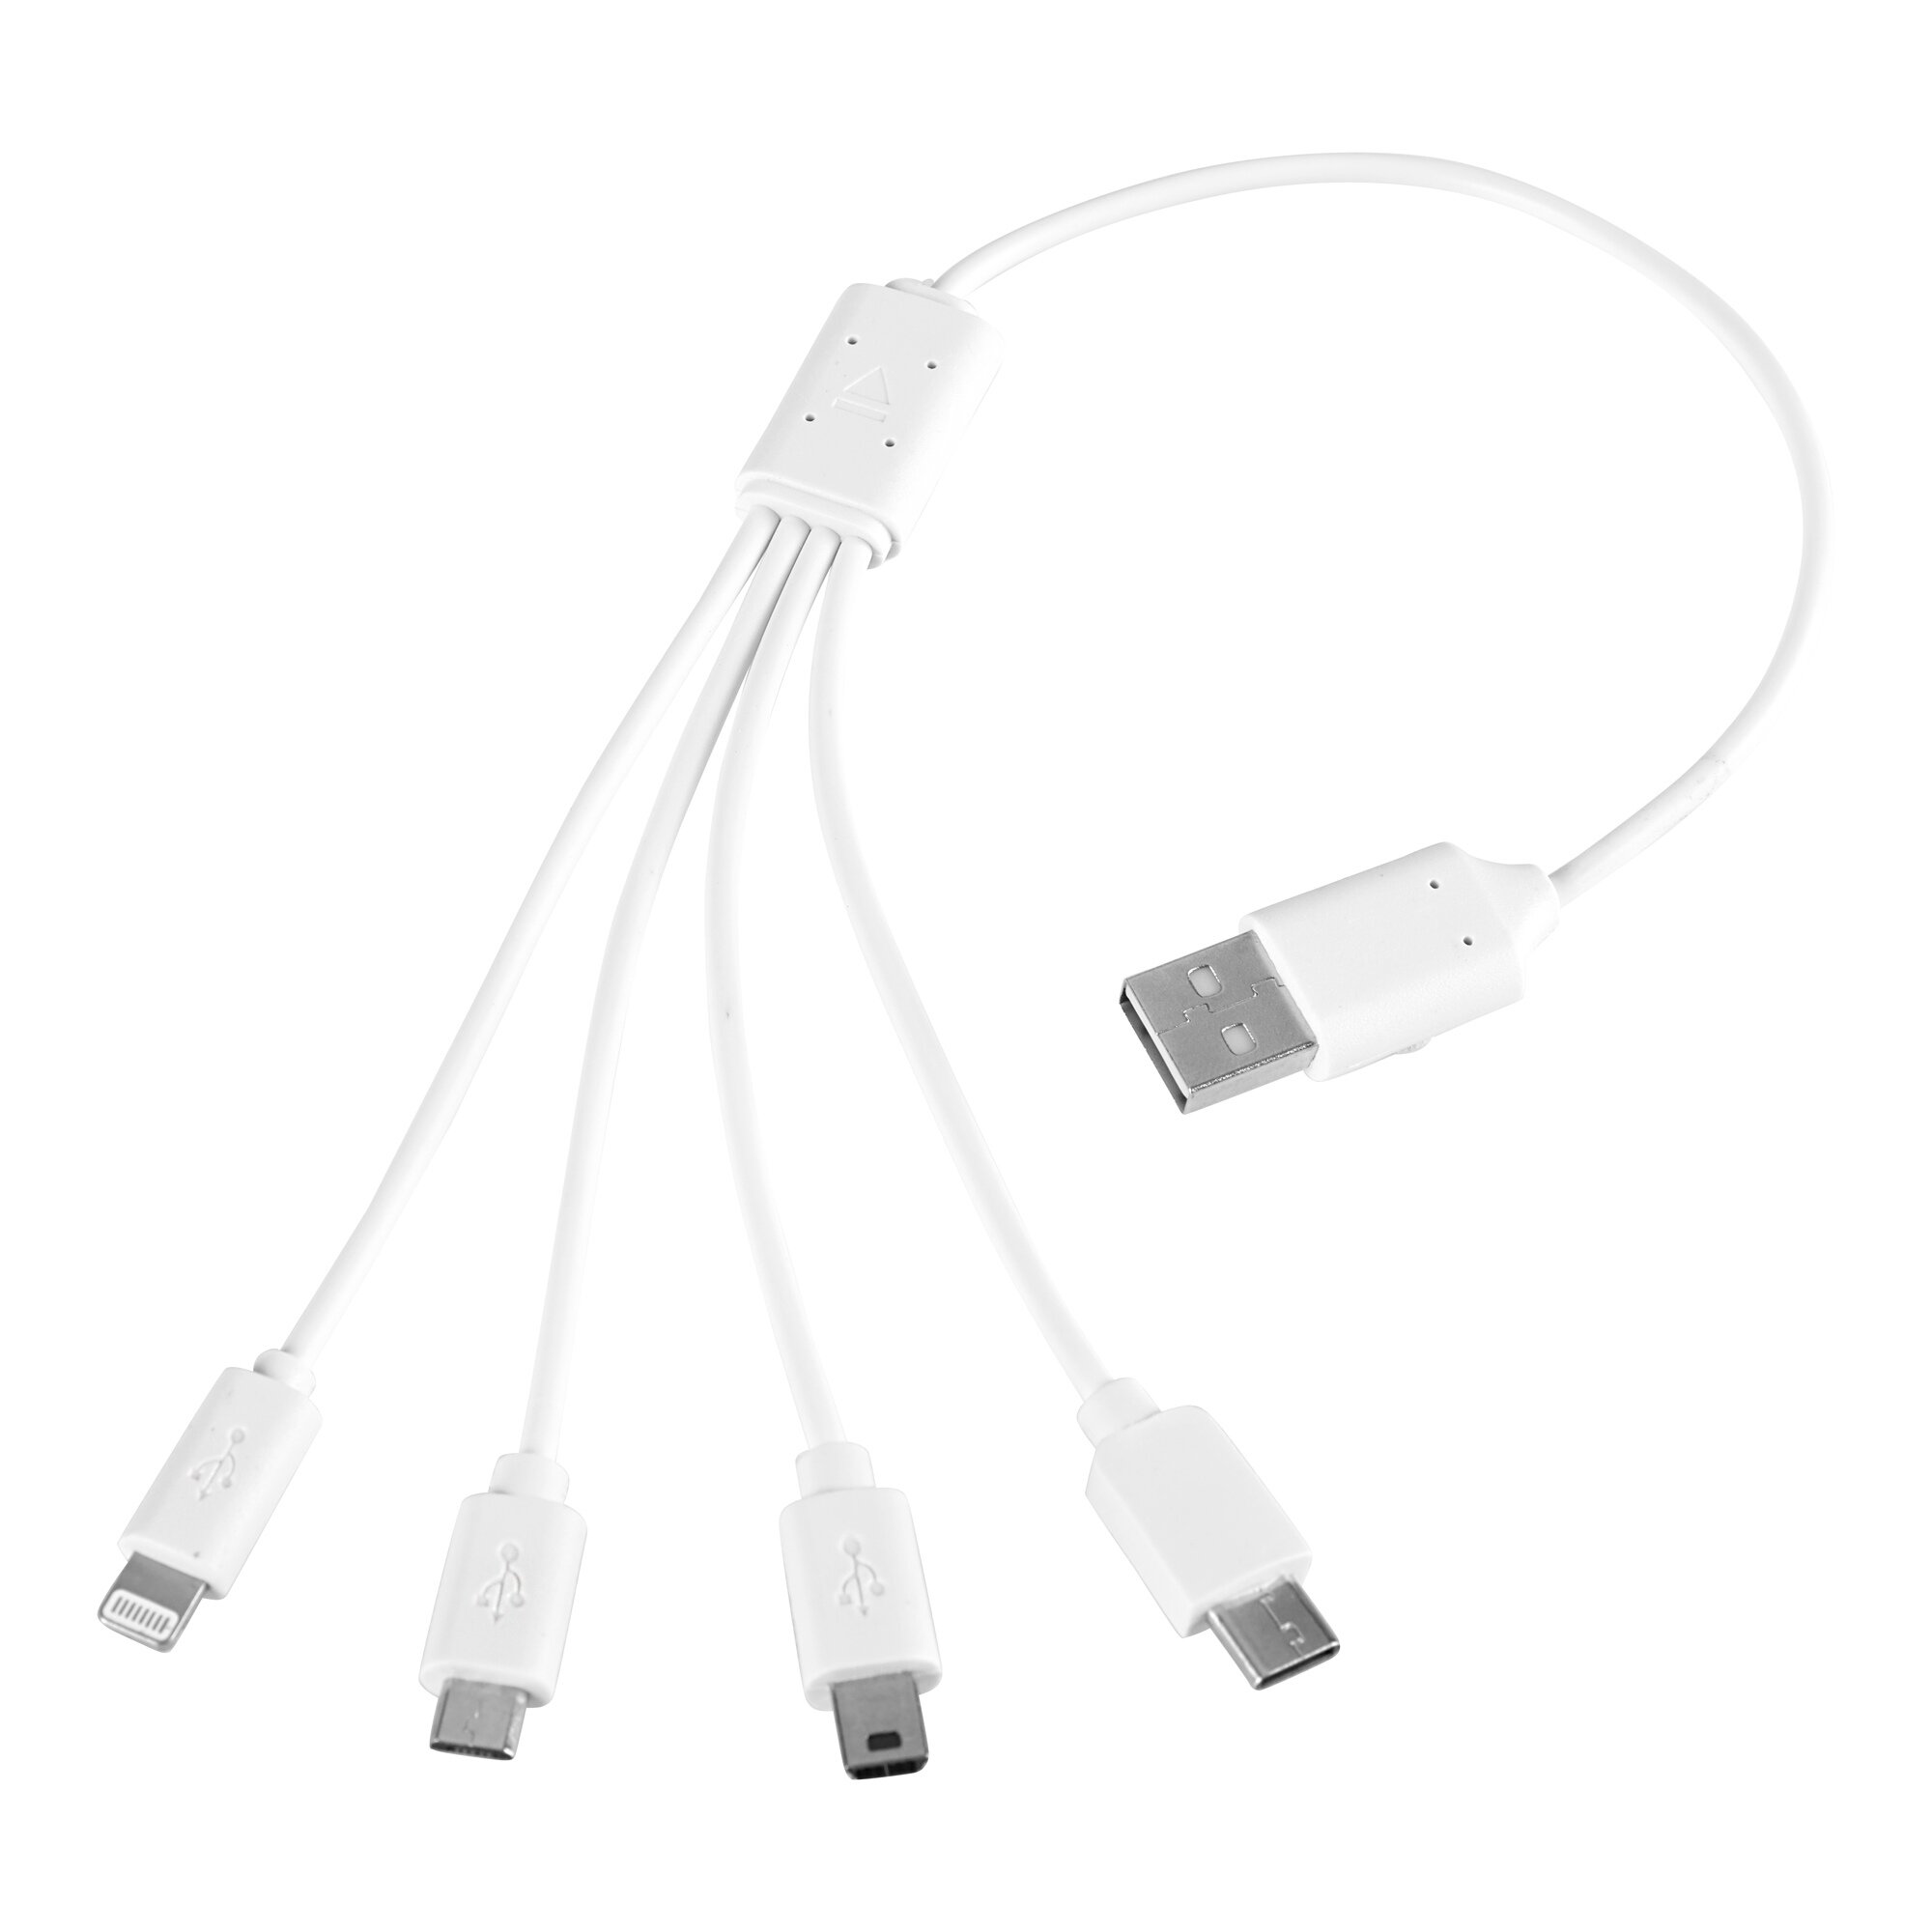 Multi-USB-Ladekabel 4 in 1